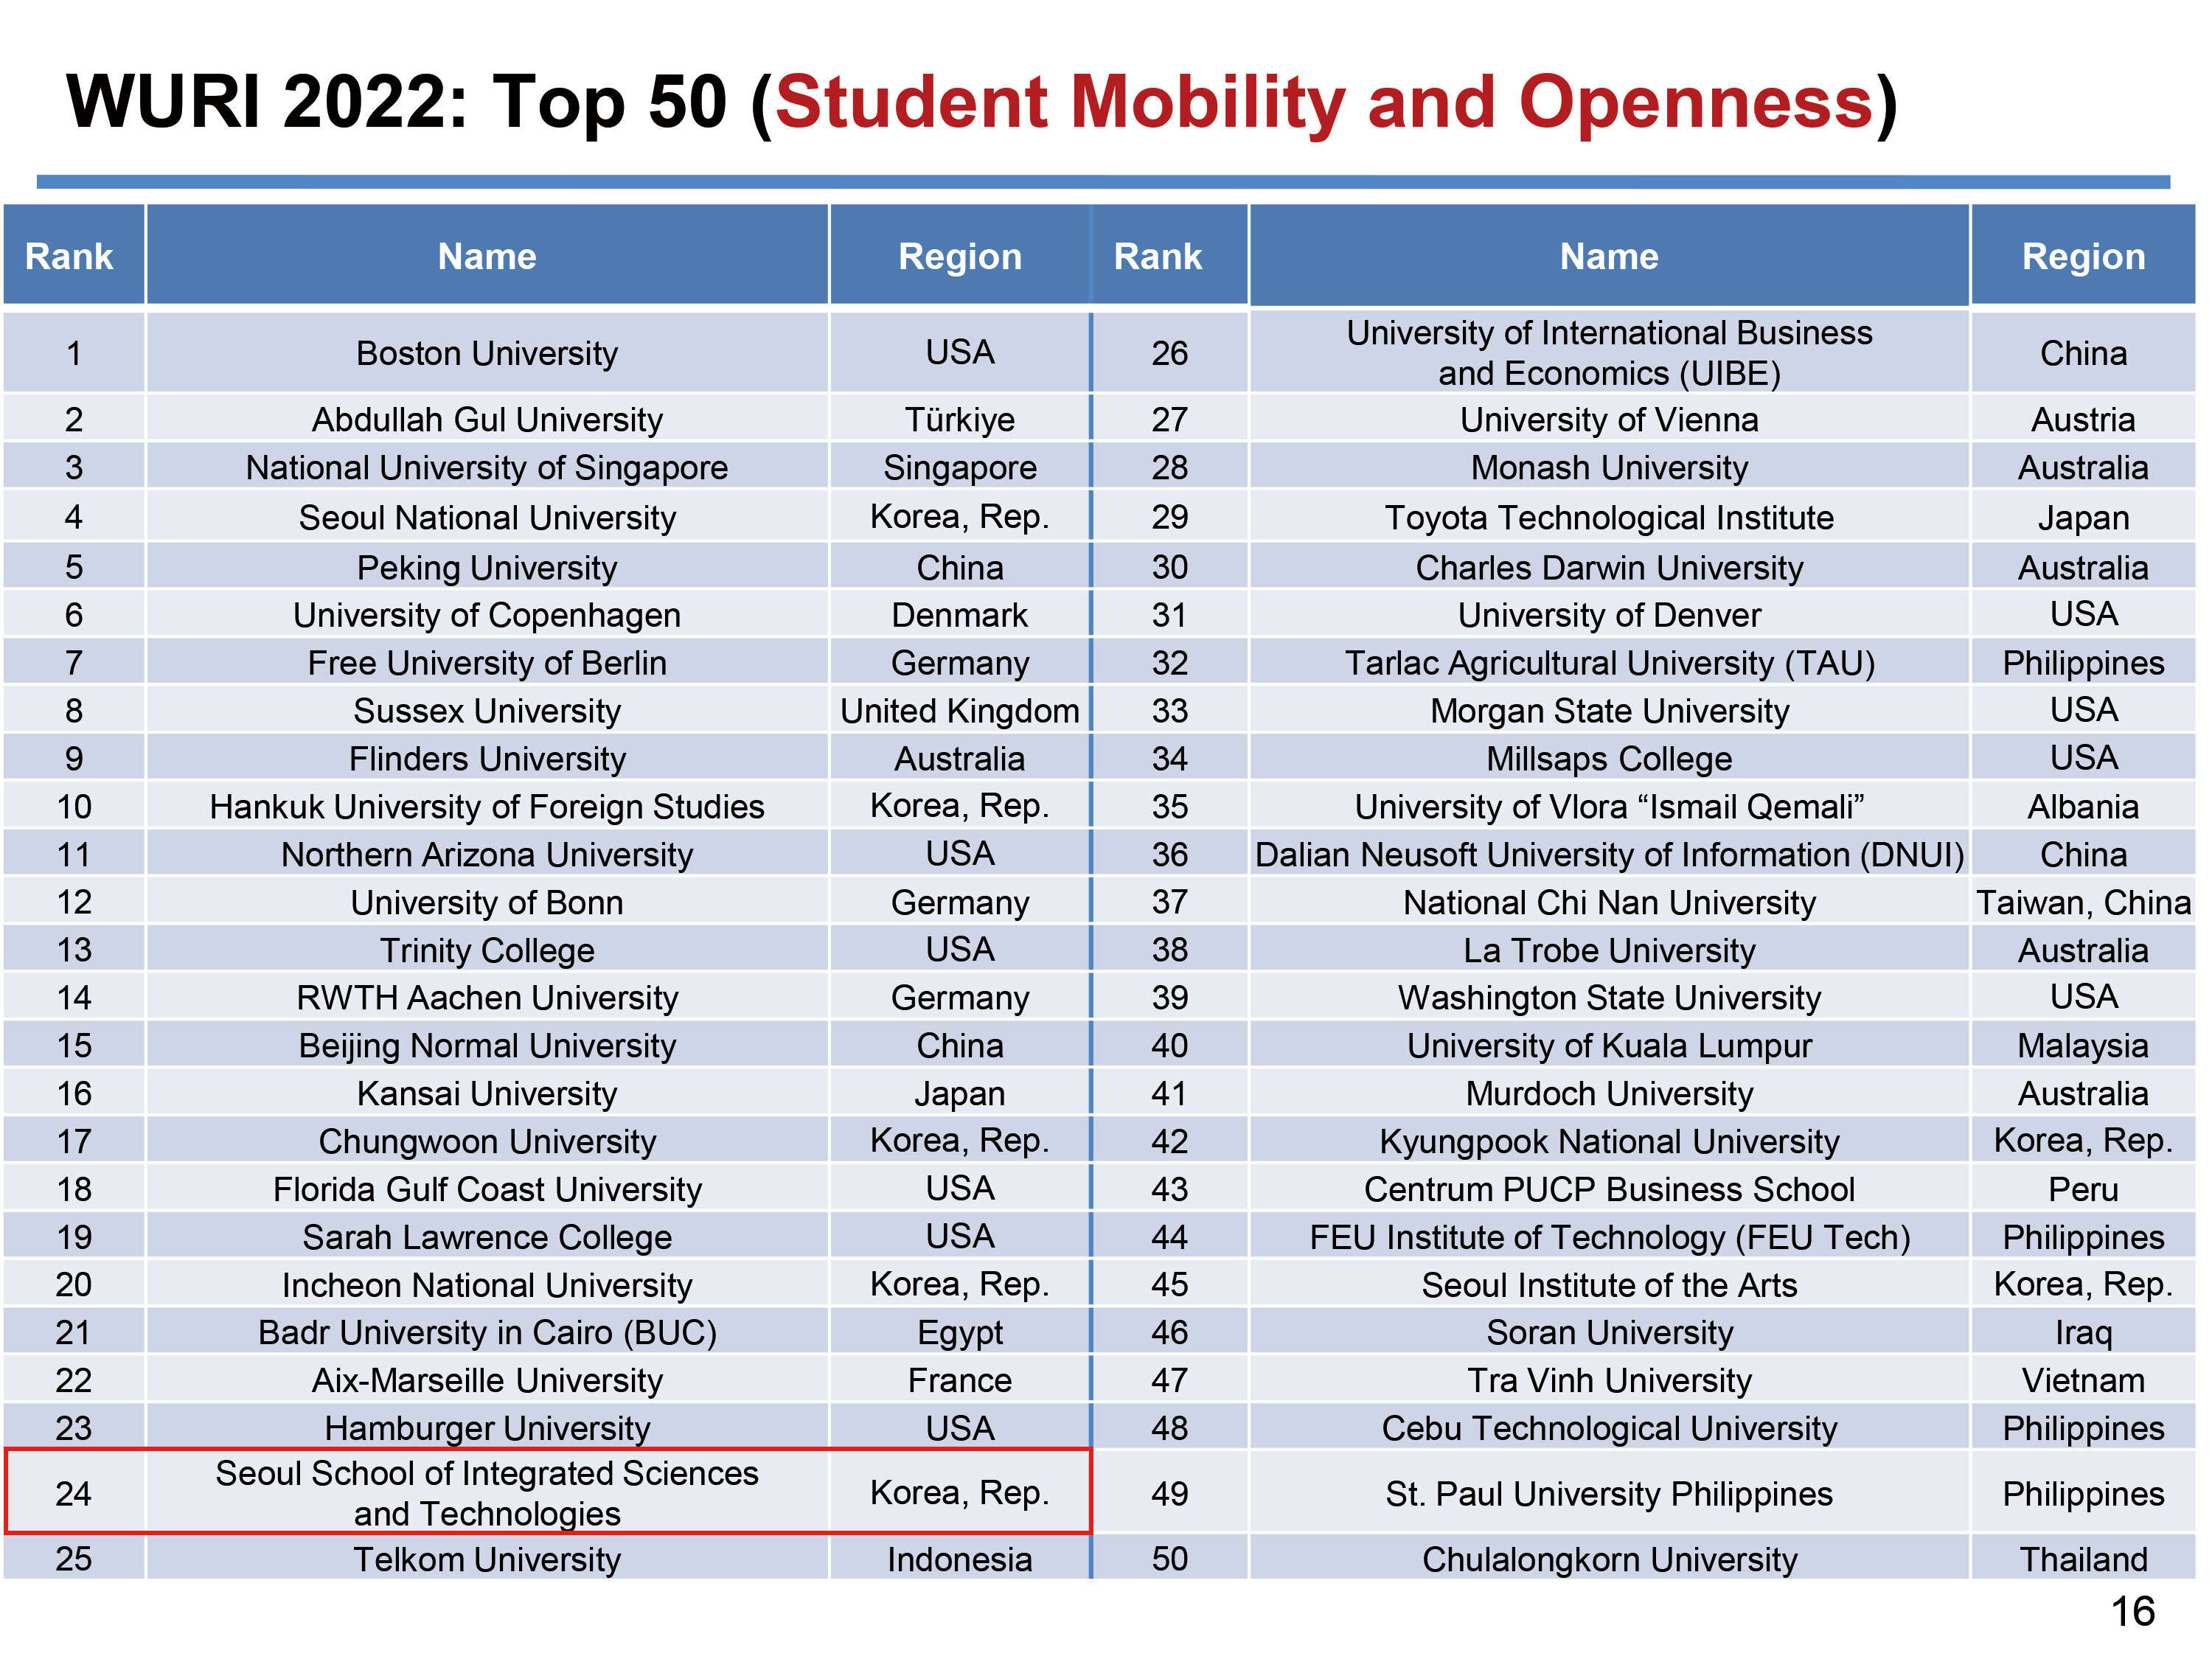 韩国首尔科大在Students Mobility and Openness（学生流动性和开放性）标准中排名第24位